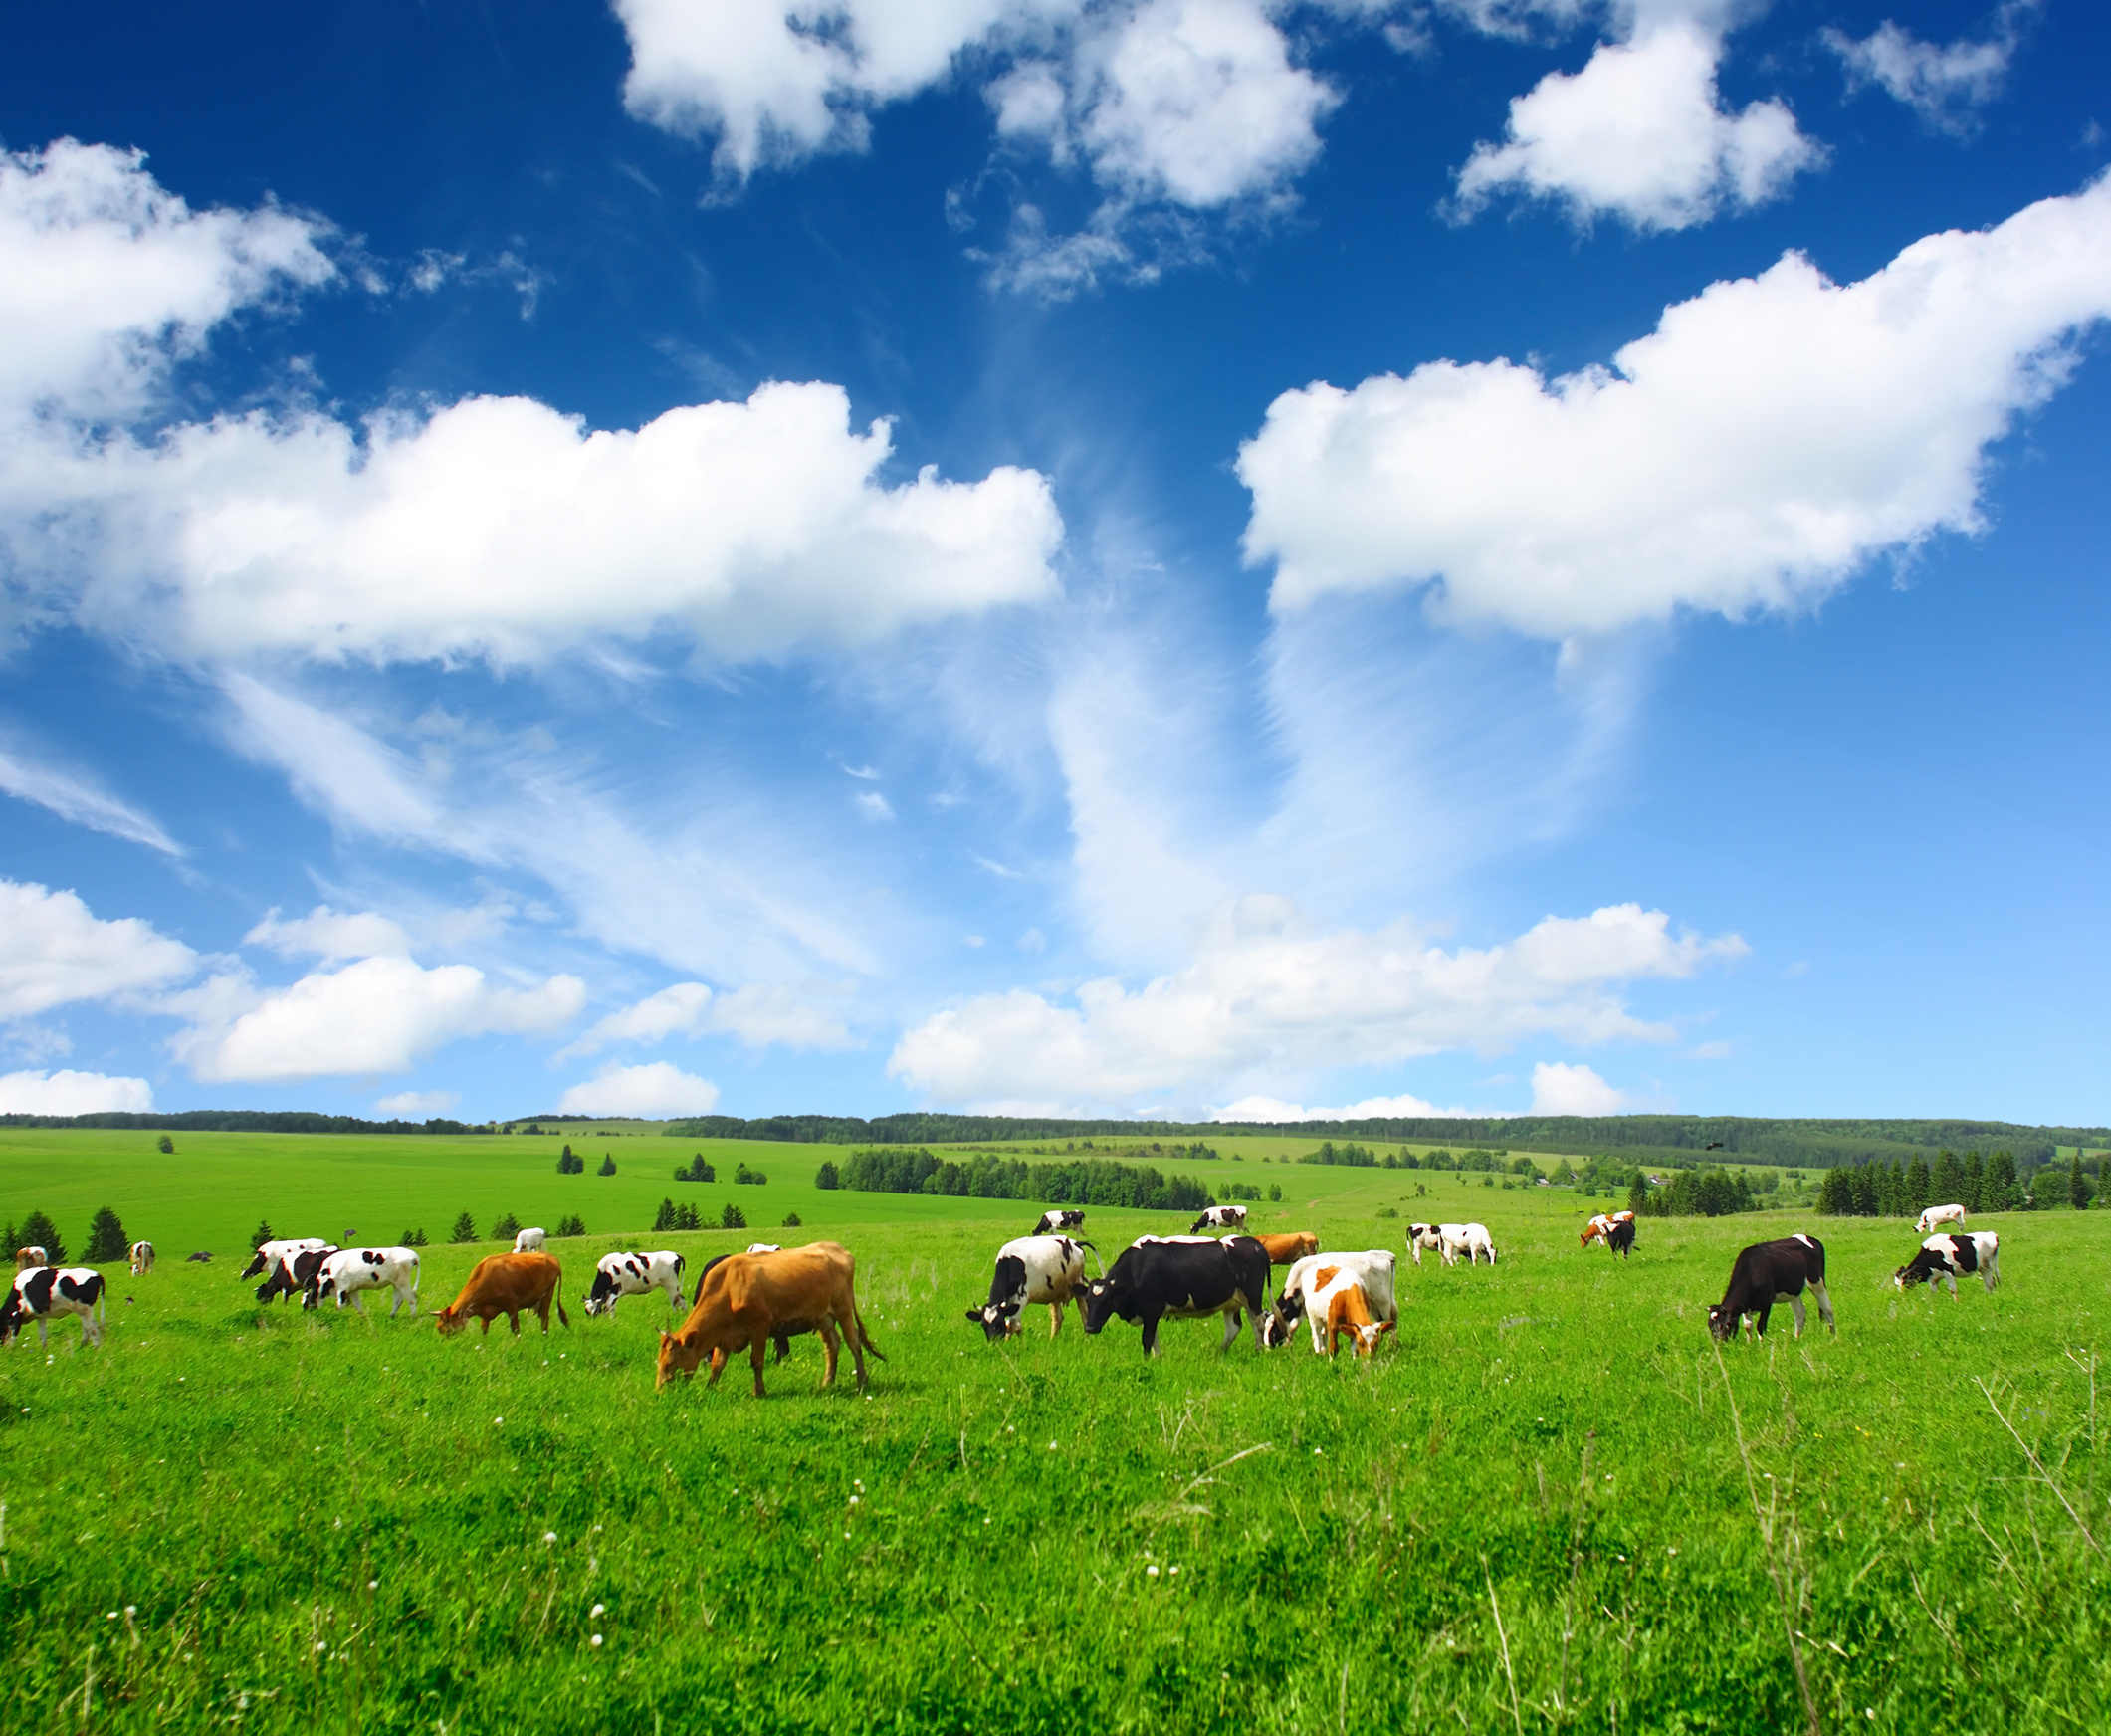 Auf einer grünen Wiese stehen Kühe. Der Himmel ist blau, nur ein paar weiße Wolken sind zu sehen. 